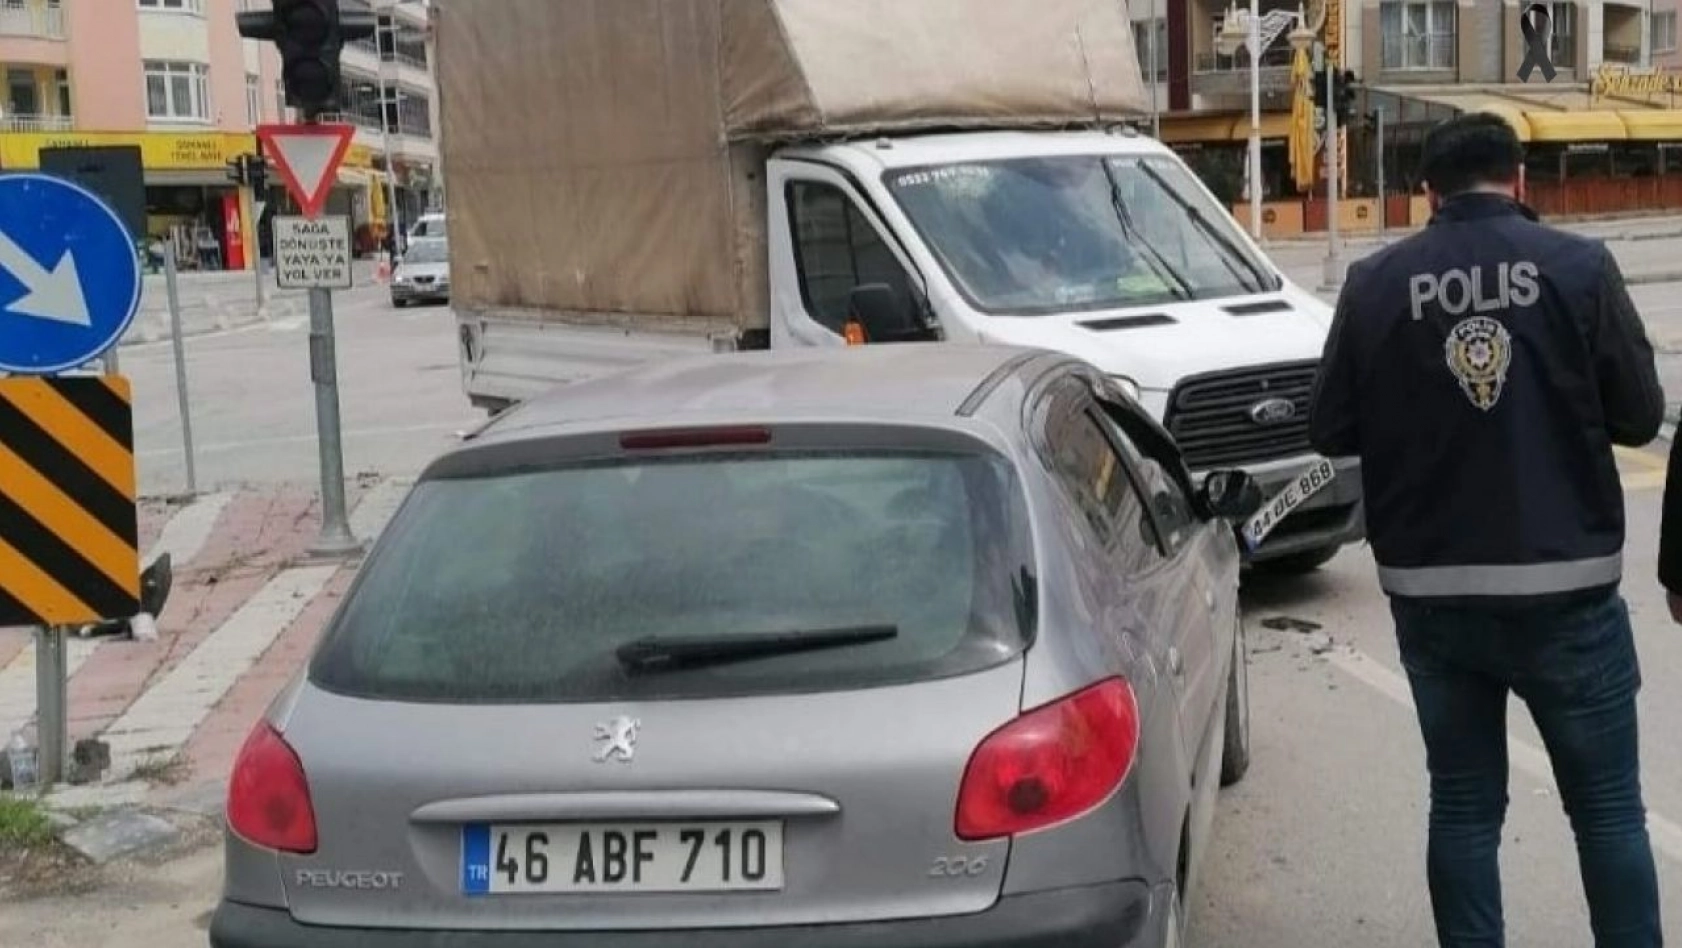 Malatya'da üç araç kazaya karıştı: 6 yaralı